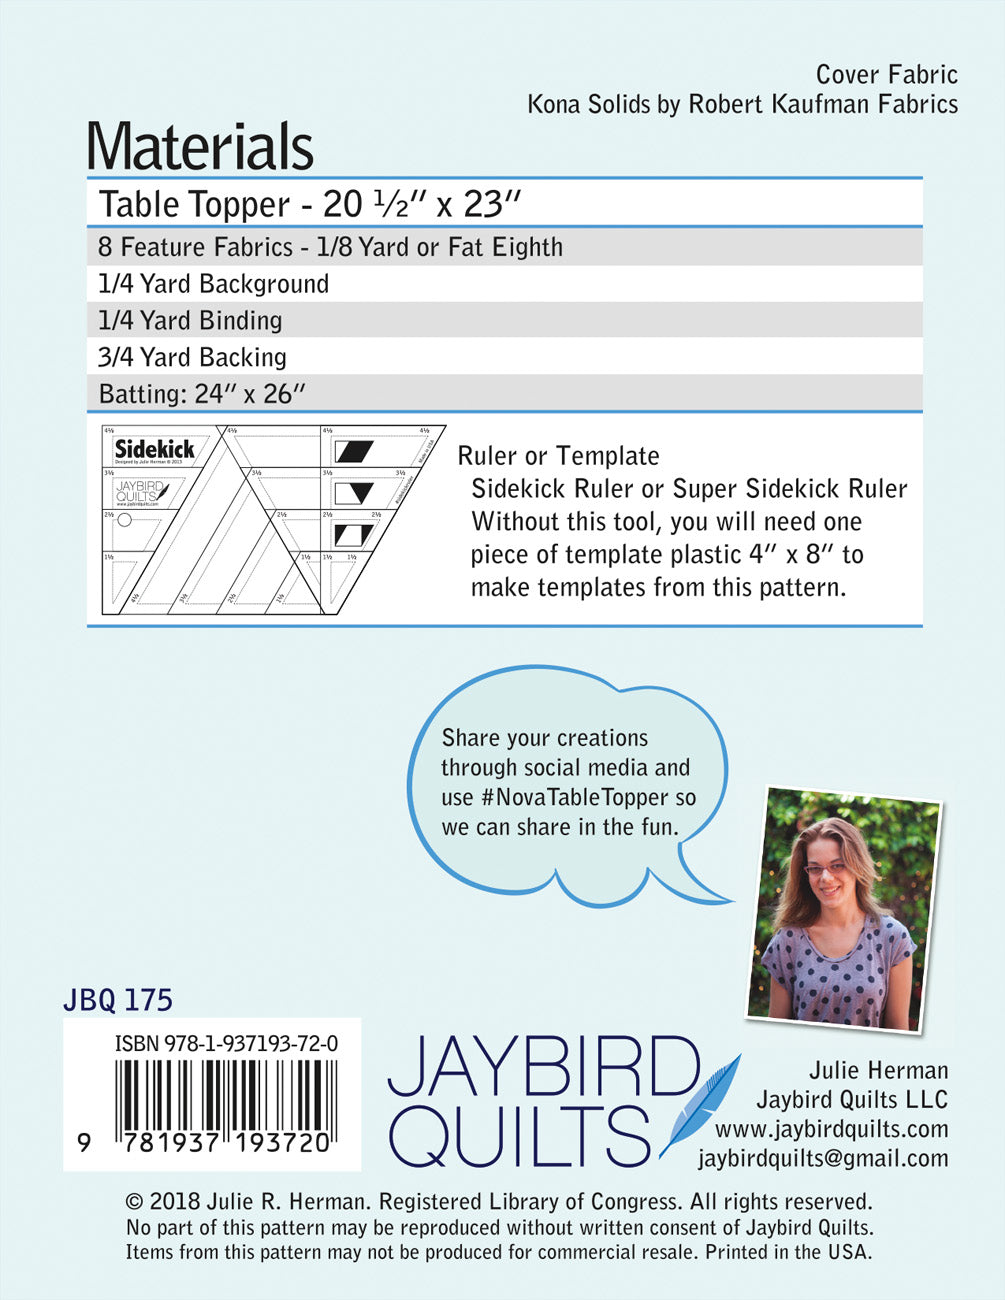 Nova Table Topper - Jaybird Quilts - Paper Pattern - JBQ 175